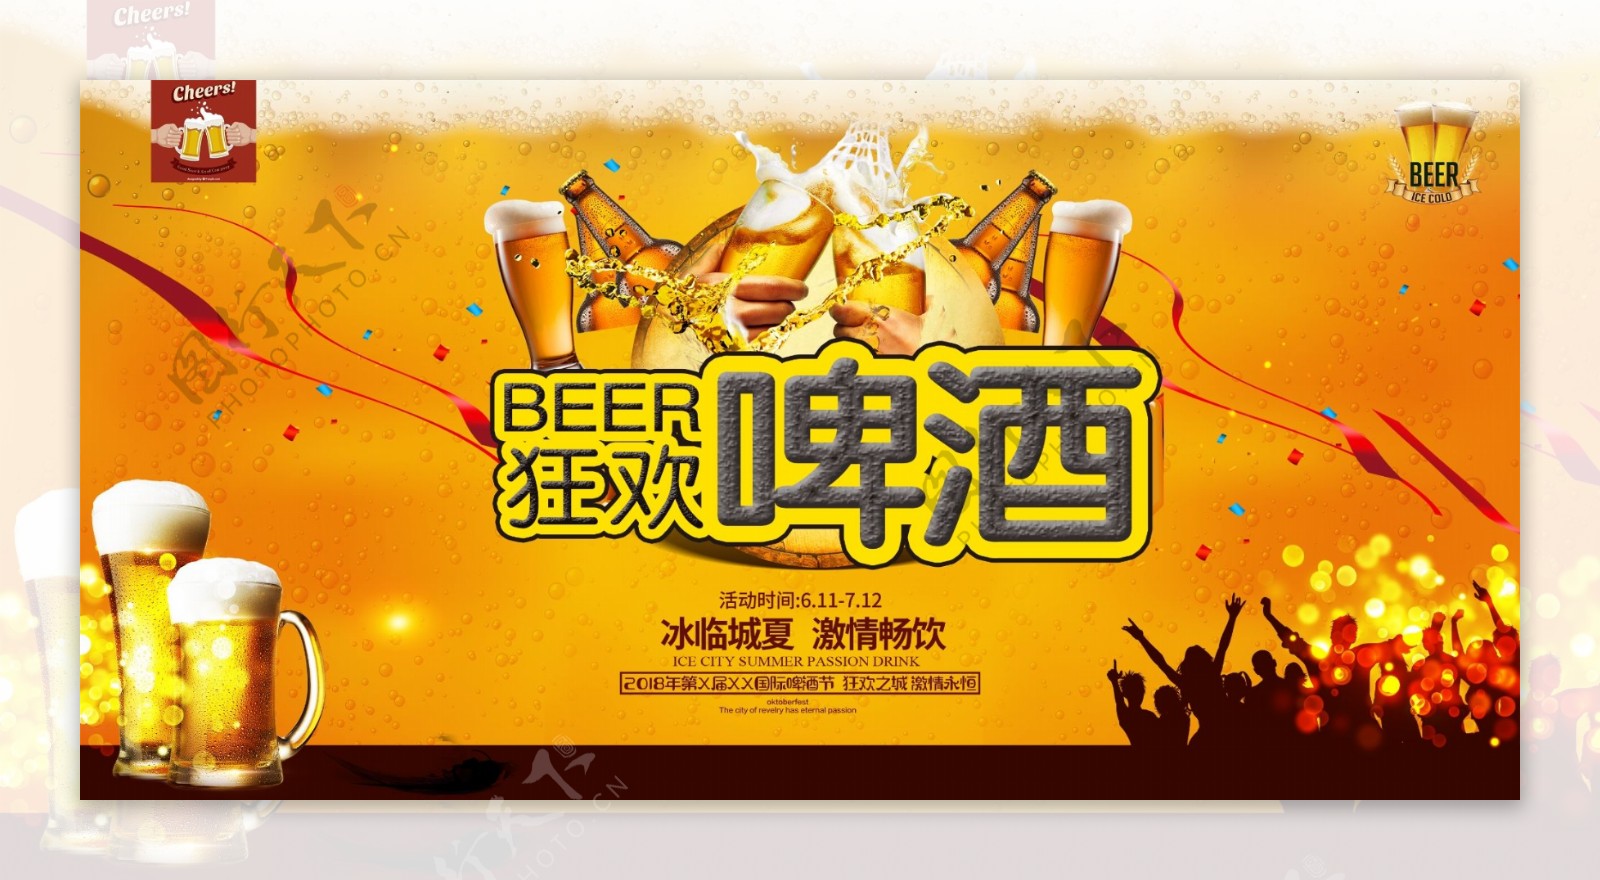 狂欢啤酒节激情世界杯横版海报设